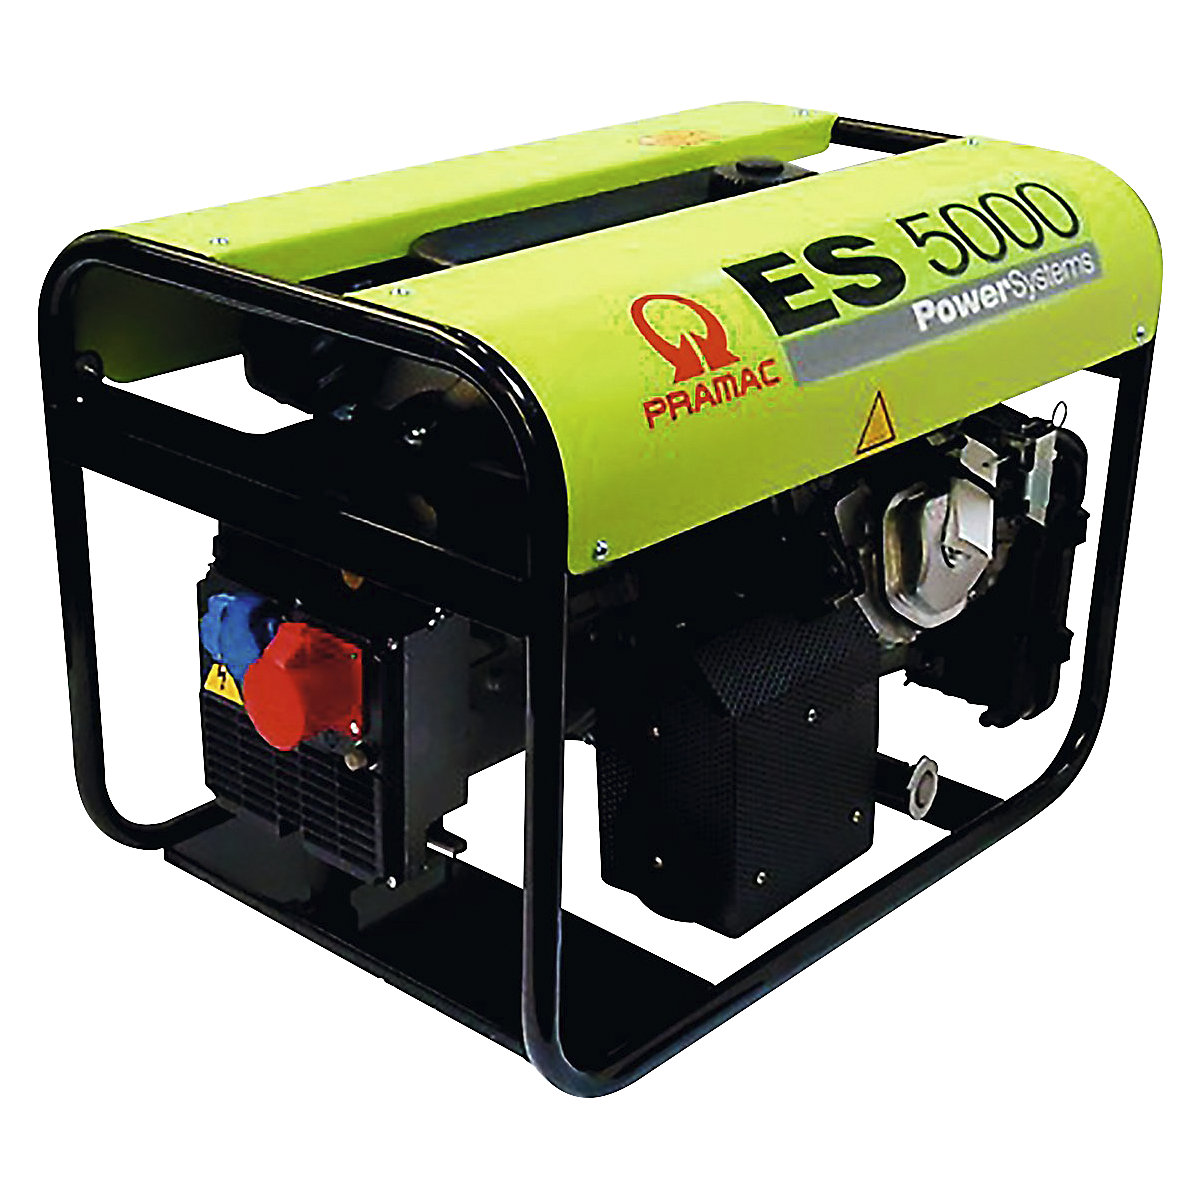 Agregat prądotwórczy serii ES – benzyna, 400/230 V – Pramac, ES 5000 – moc 3,2 kW, 3,2 / 4,3 kW